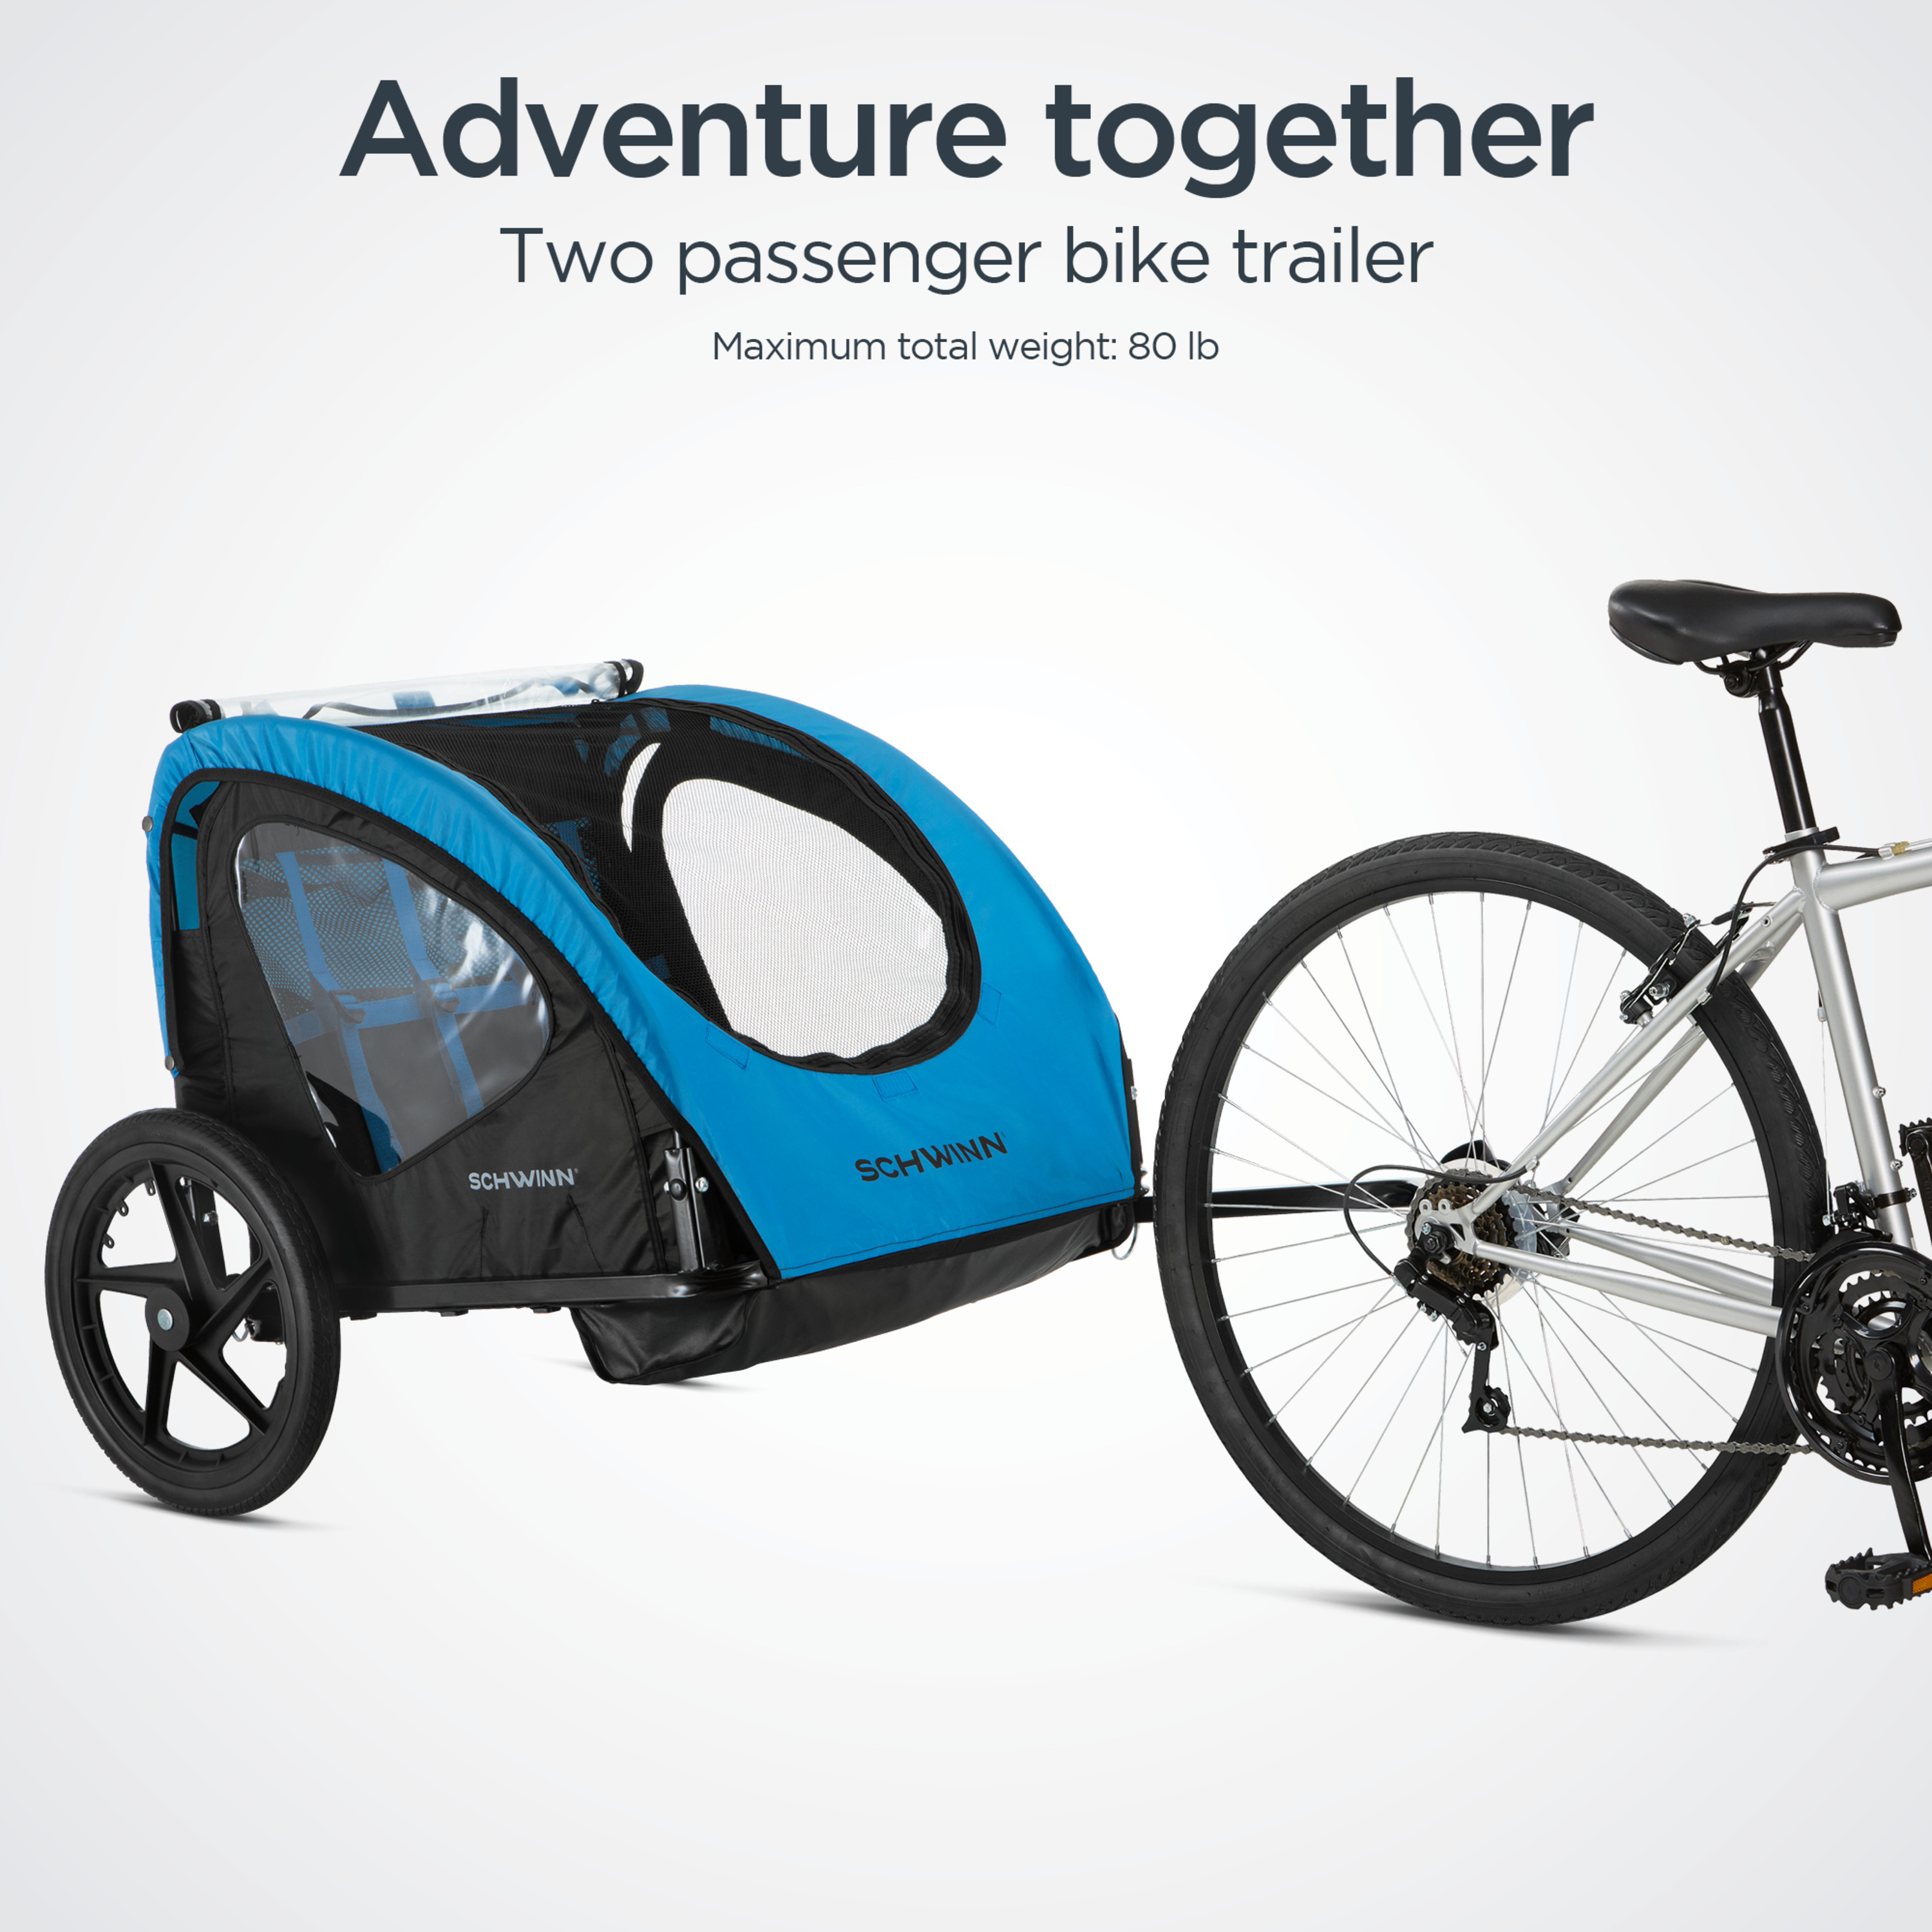 Schwinn Shuttle Foldable Bike Trailer for 2 Passengers, Blue & Black - image 5 of 7